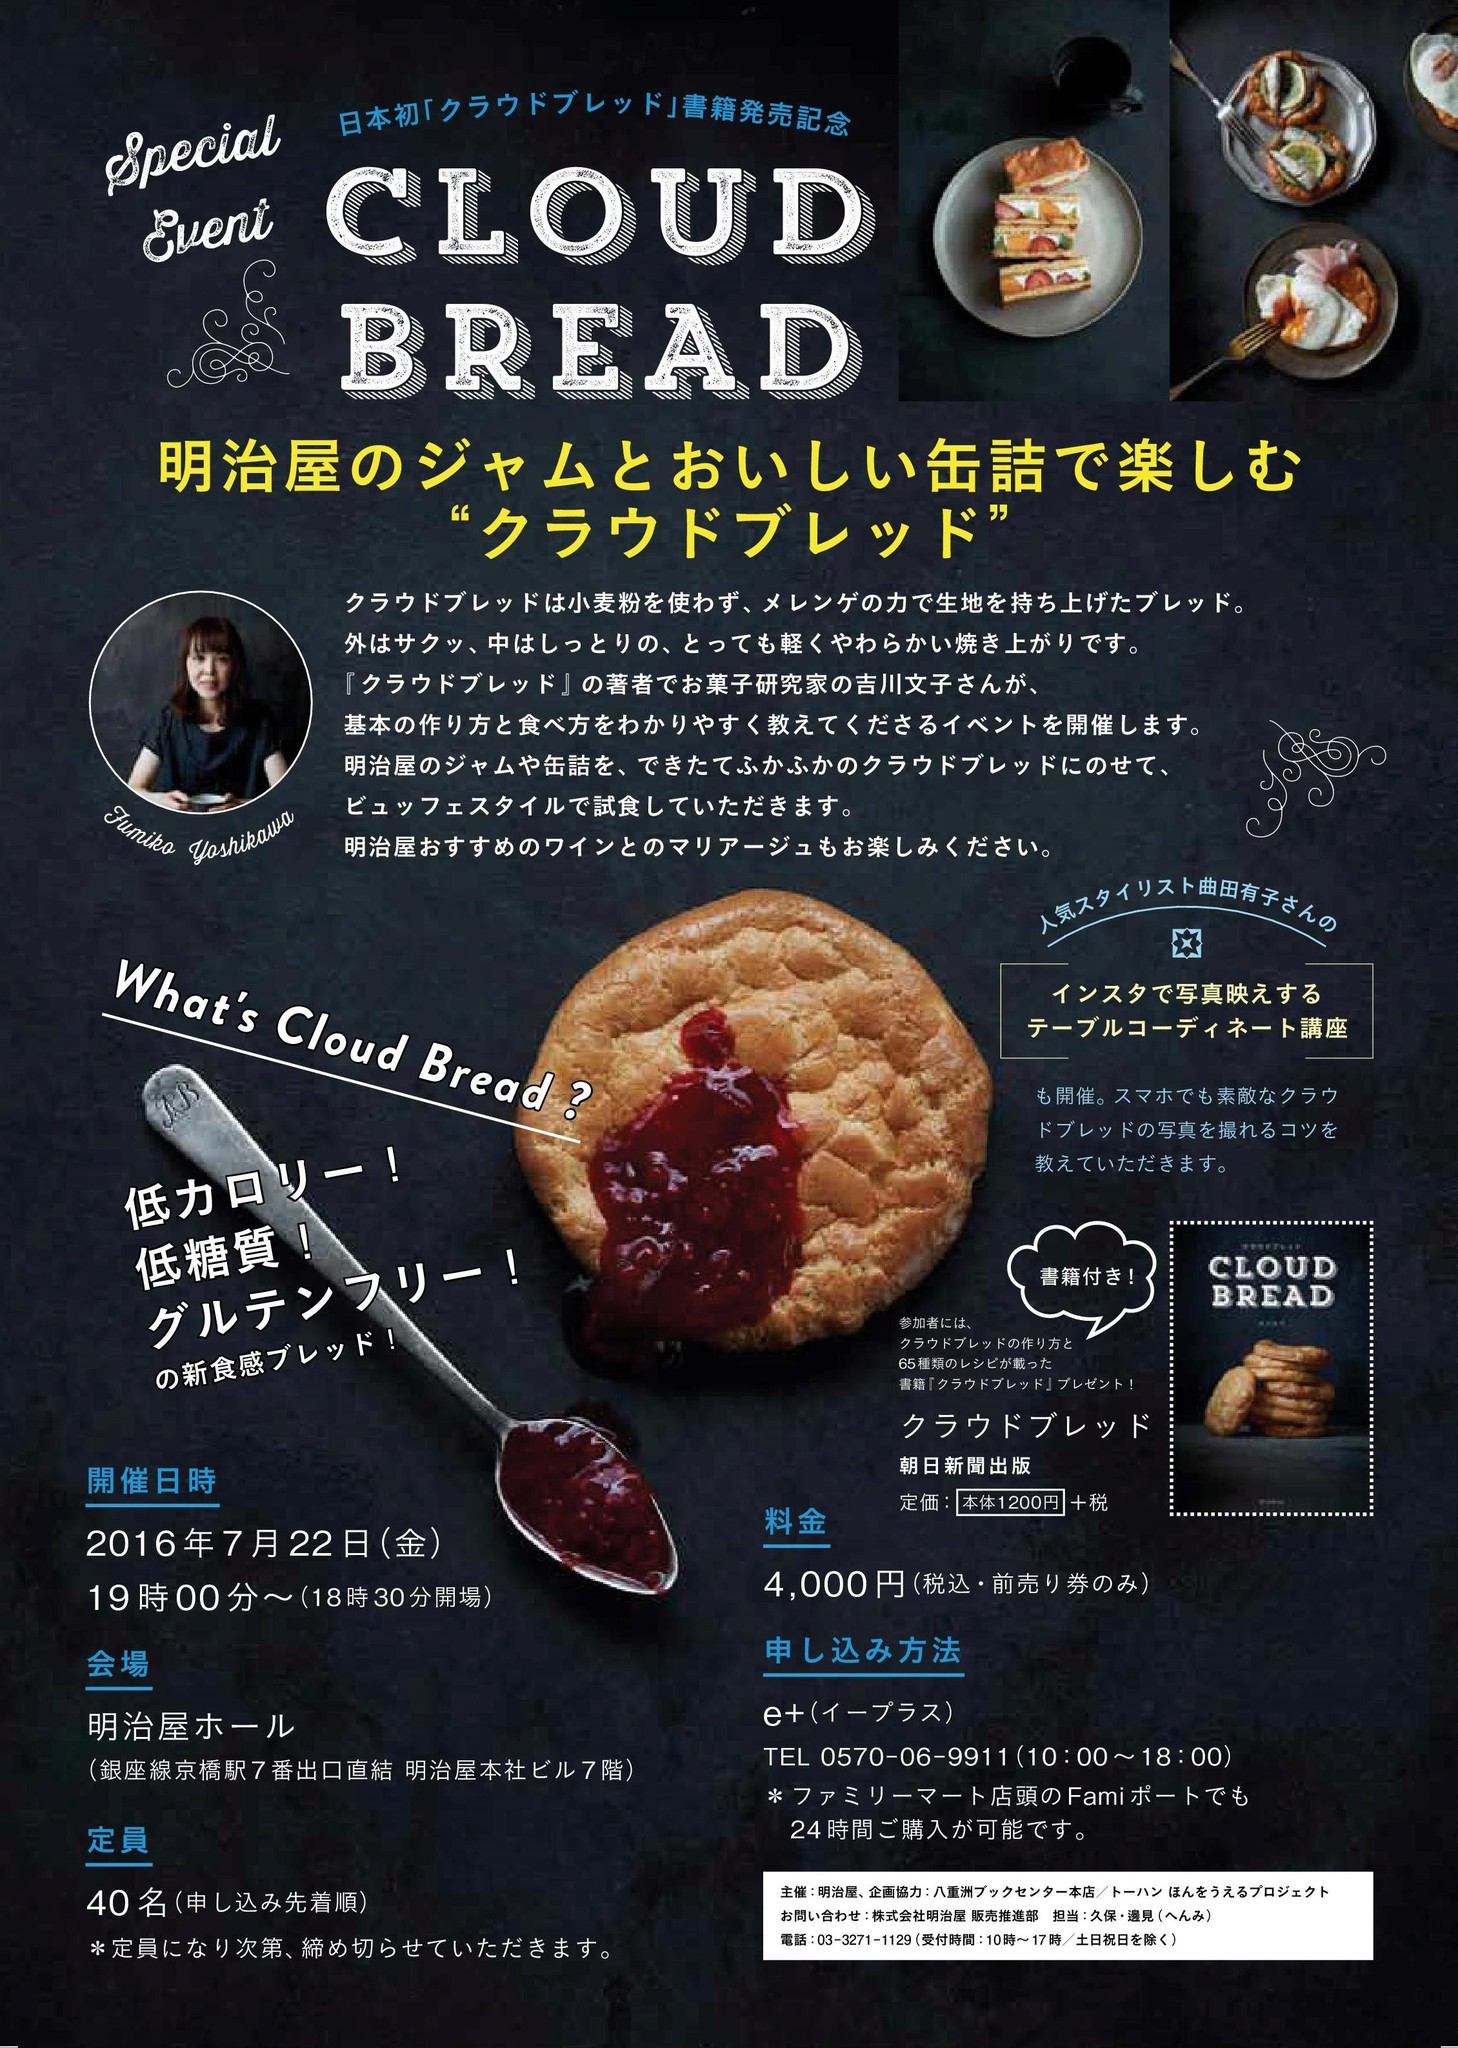 低糖質 グルテンフリーの話題のパン クラウドブレッド をいち早く食べられる 7月22日に試食イベント開催 株式会社朝日新聞出版のプレスリリース